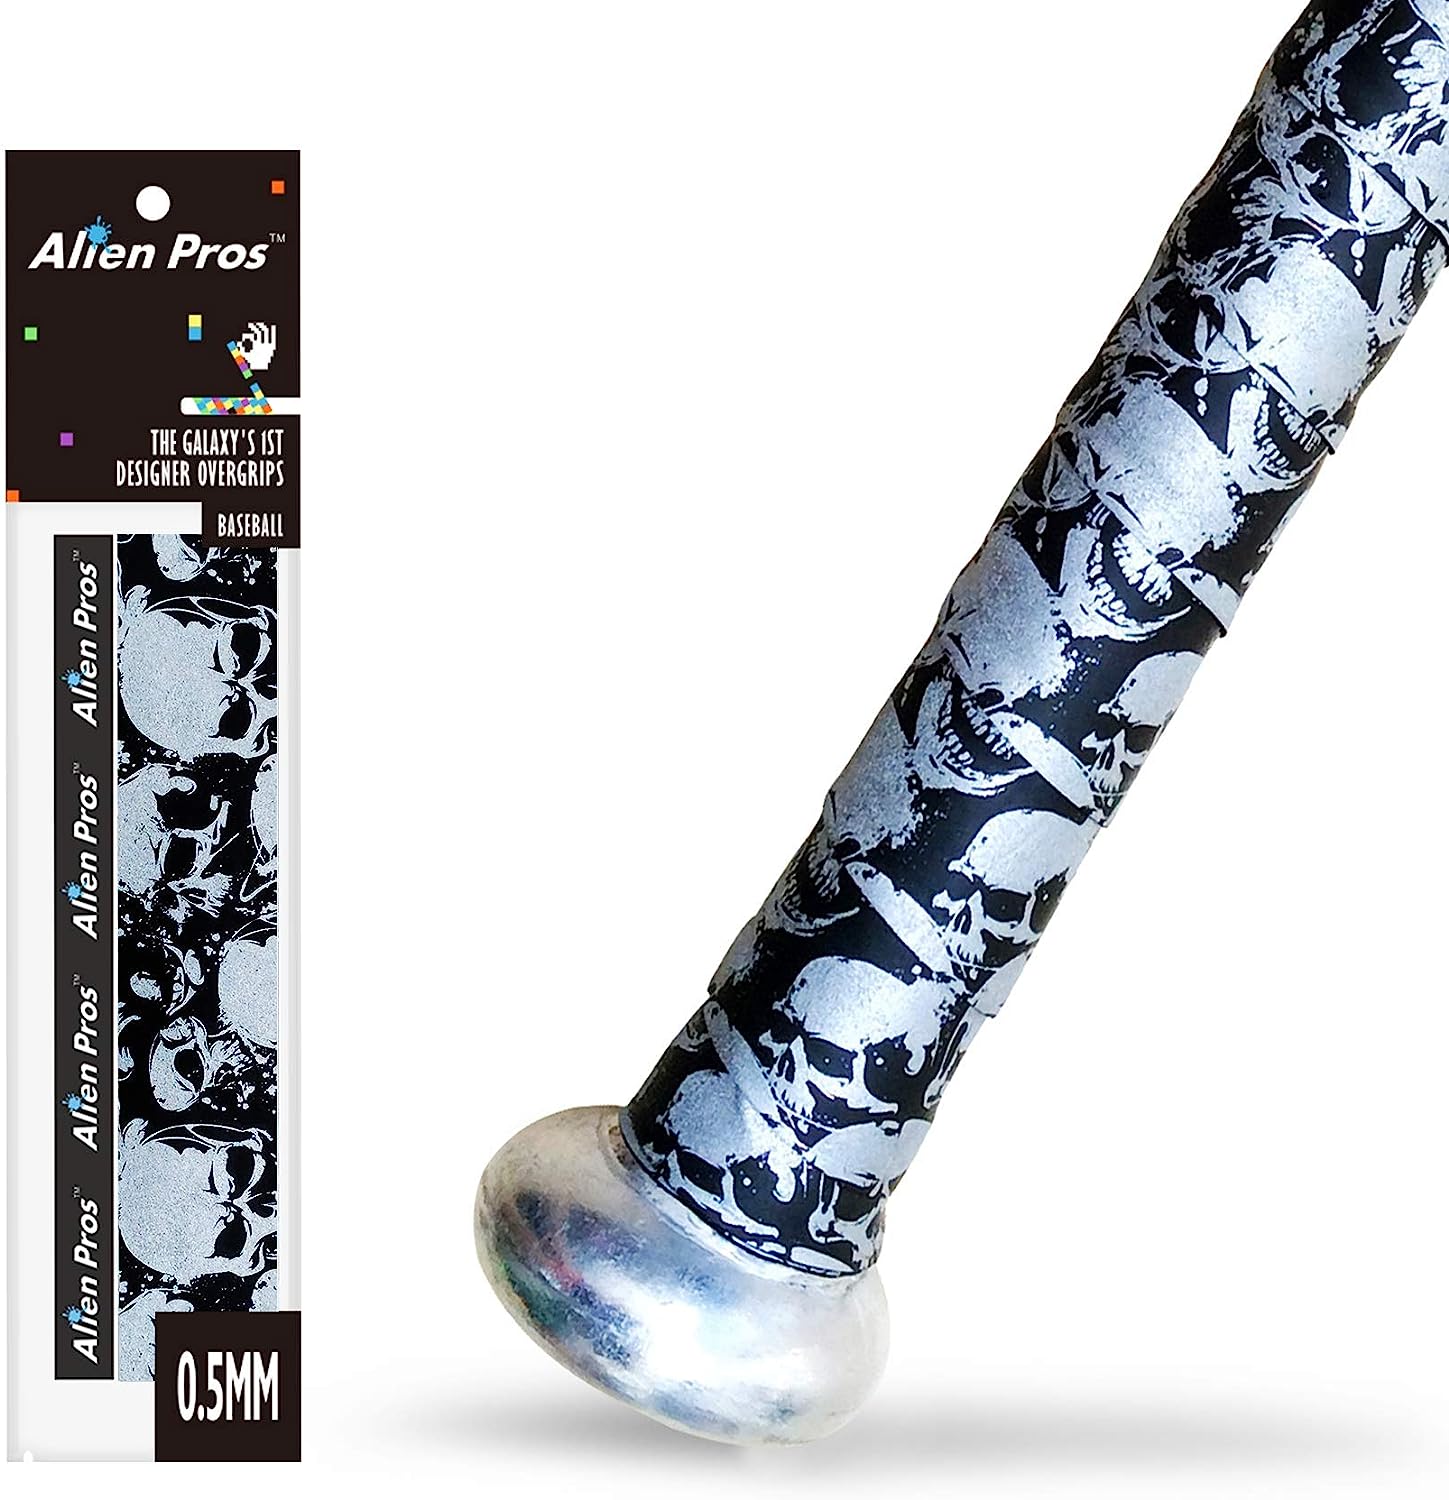 ALIEN PROS Bat Grip Tape for Baseball 0.5MM (1 or 3 [...]